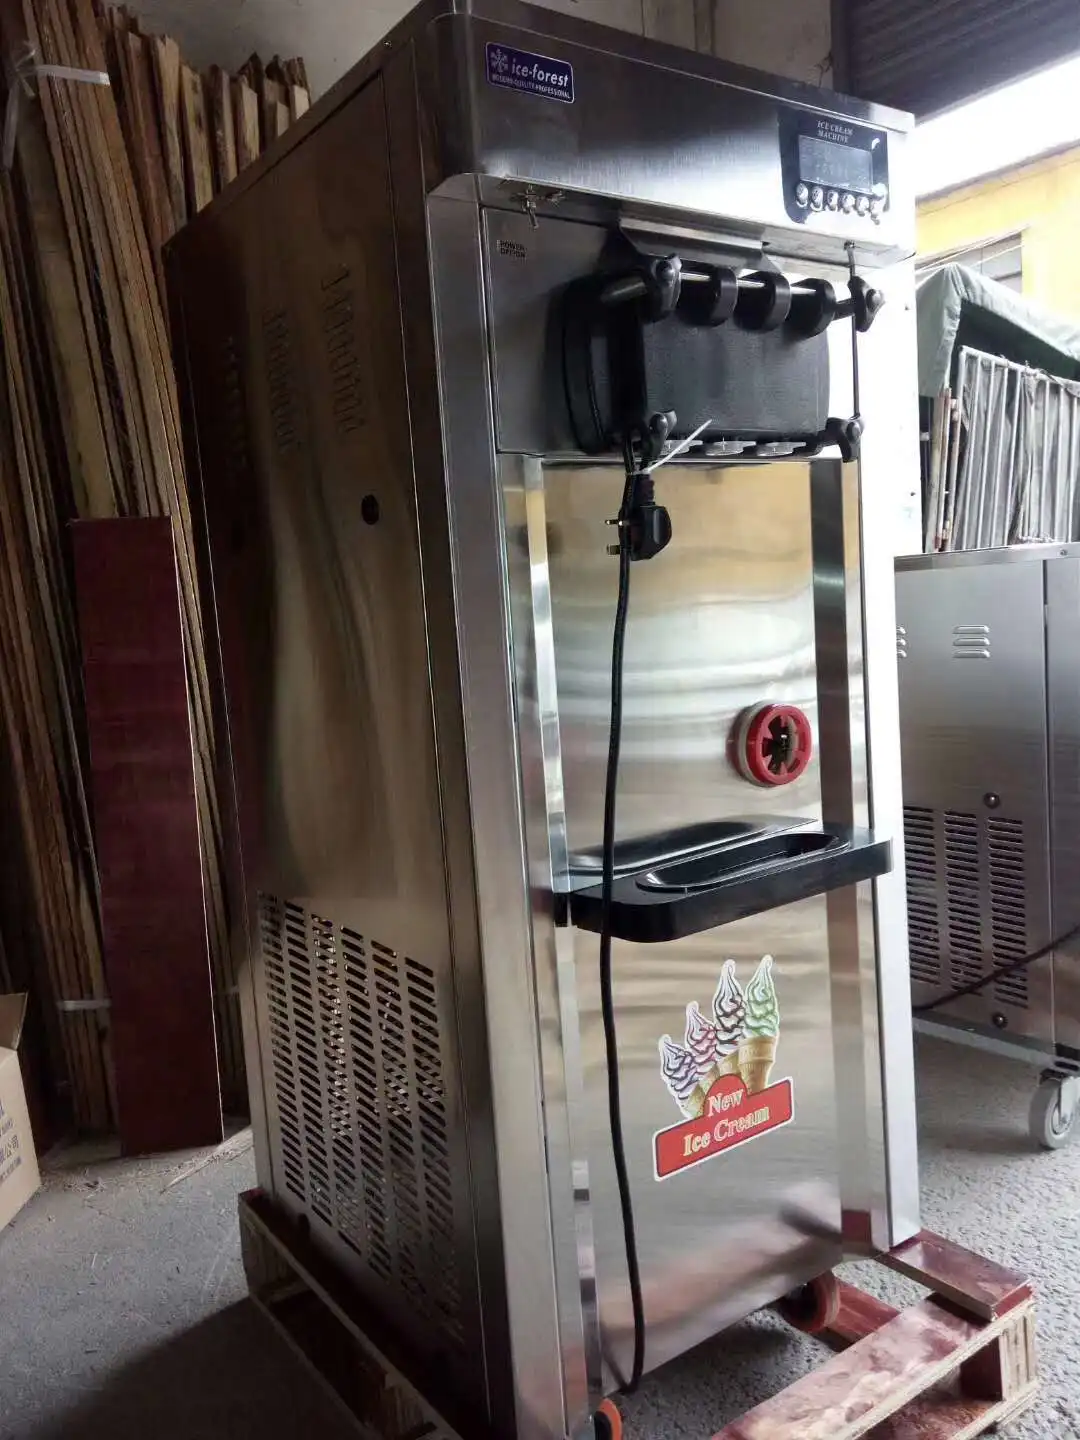  Коммерческая машина для производства мягкого мороженого с 2 конусами 3